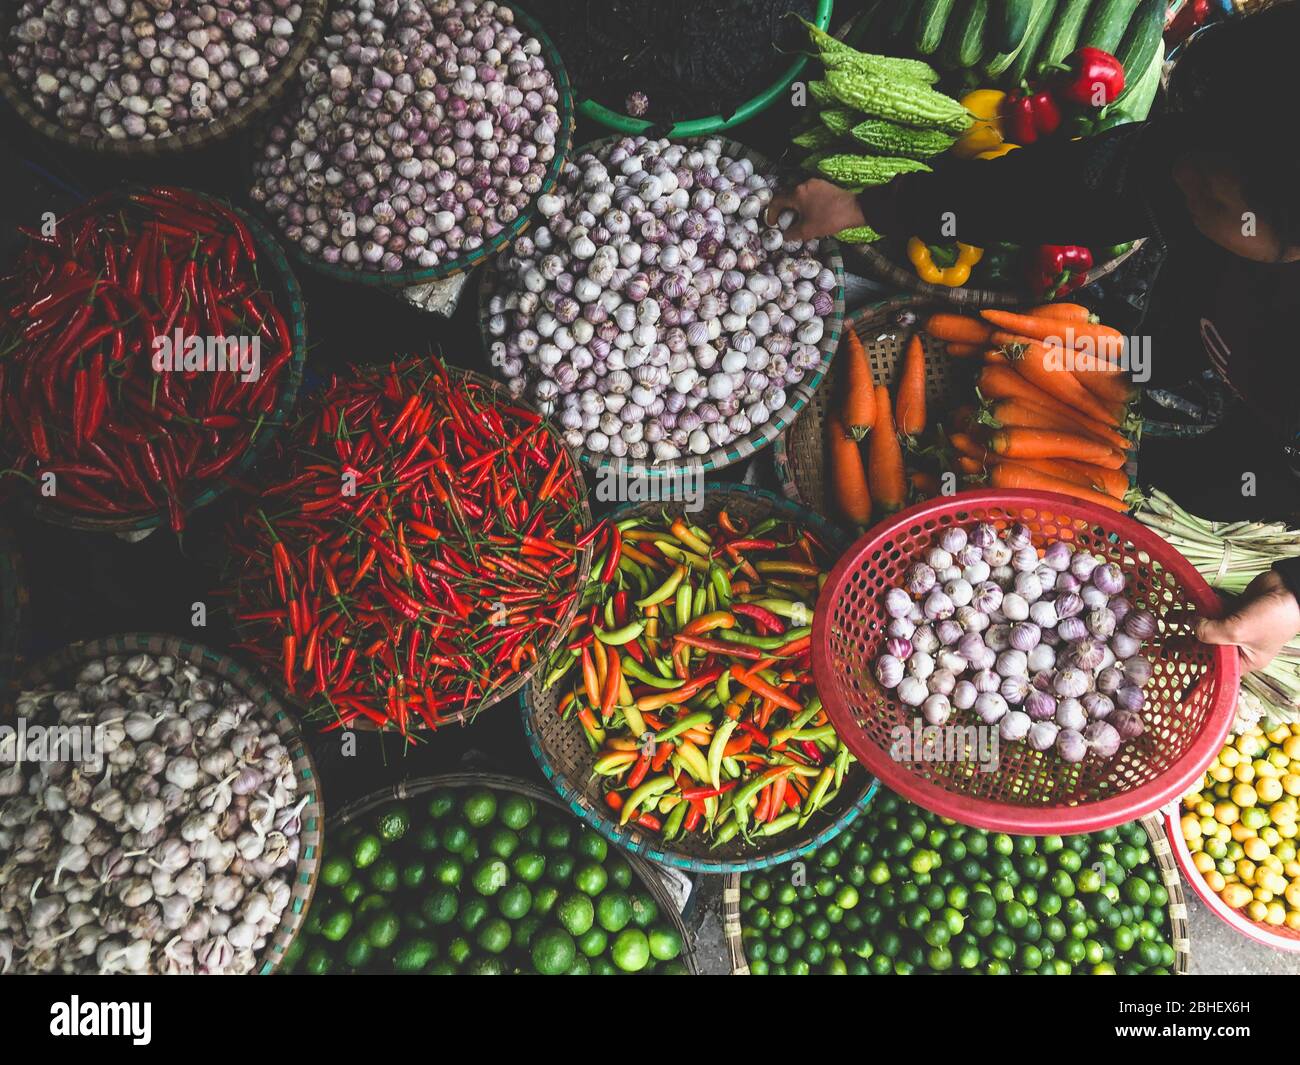 Hanoi, Vietnam, Febuary 1, 2020 - verdure fresche in vendita al mercato alimentare di strada nella città vecchia. Aglio, limone, ananas, cipolle, Peper, peperoncino rosso Foto Stock